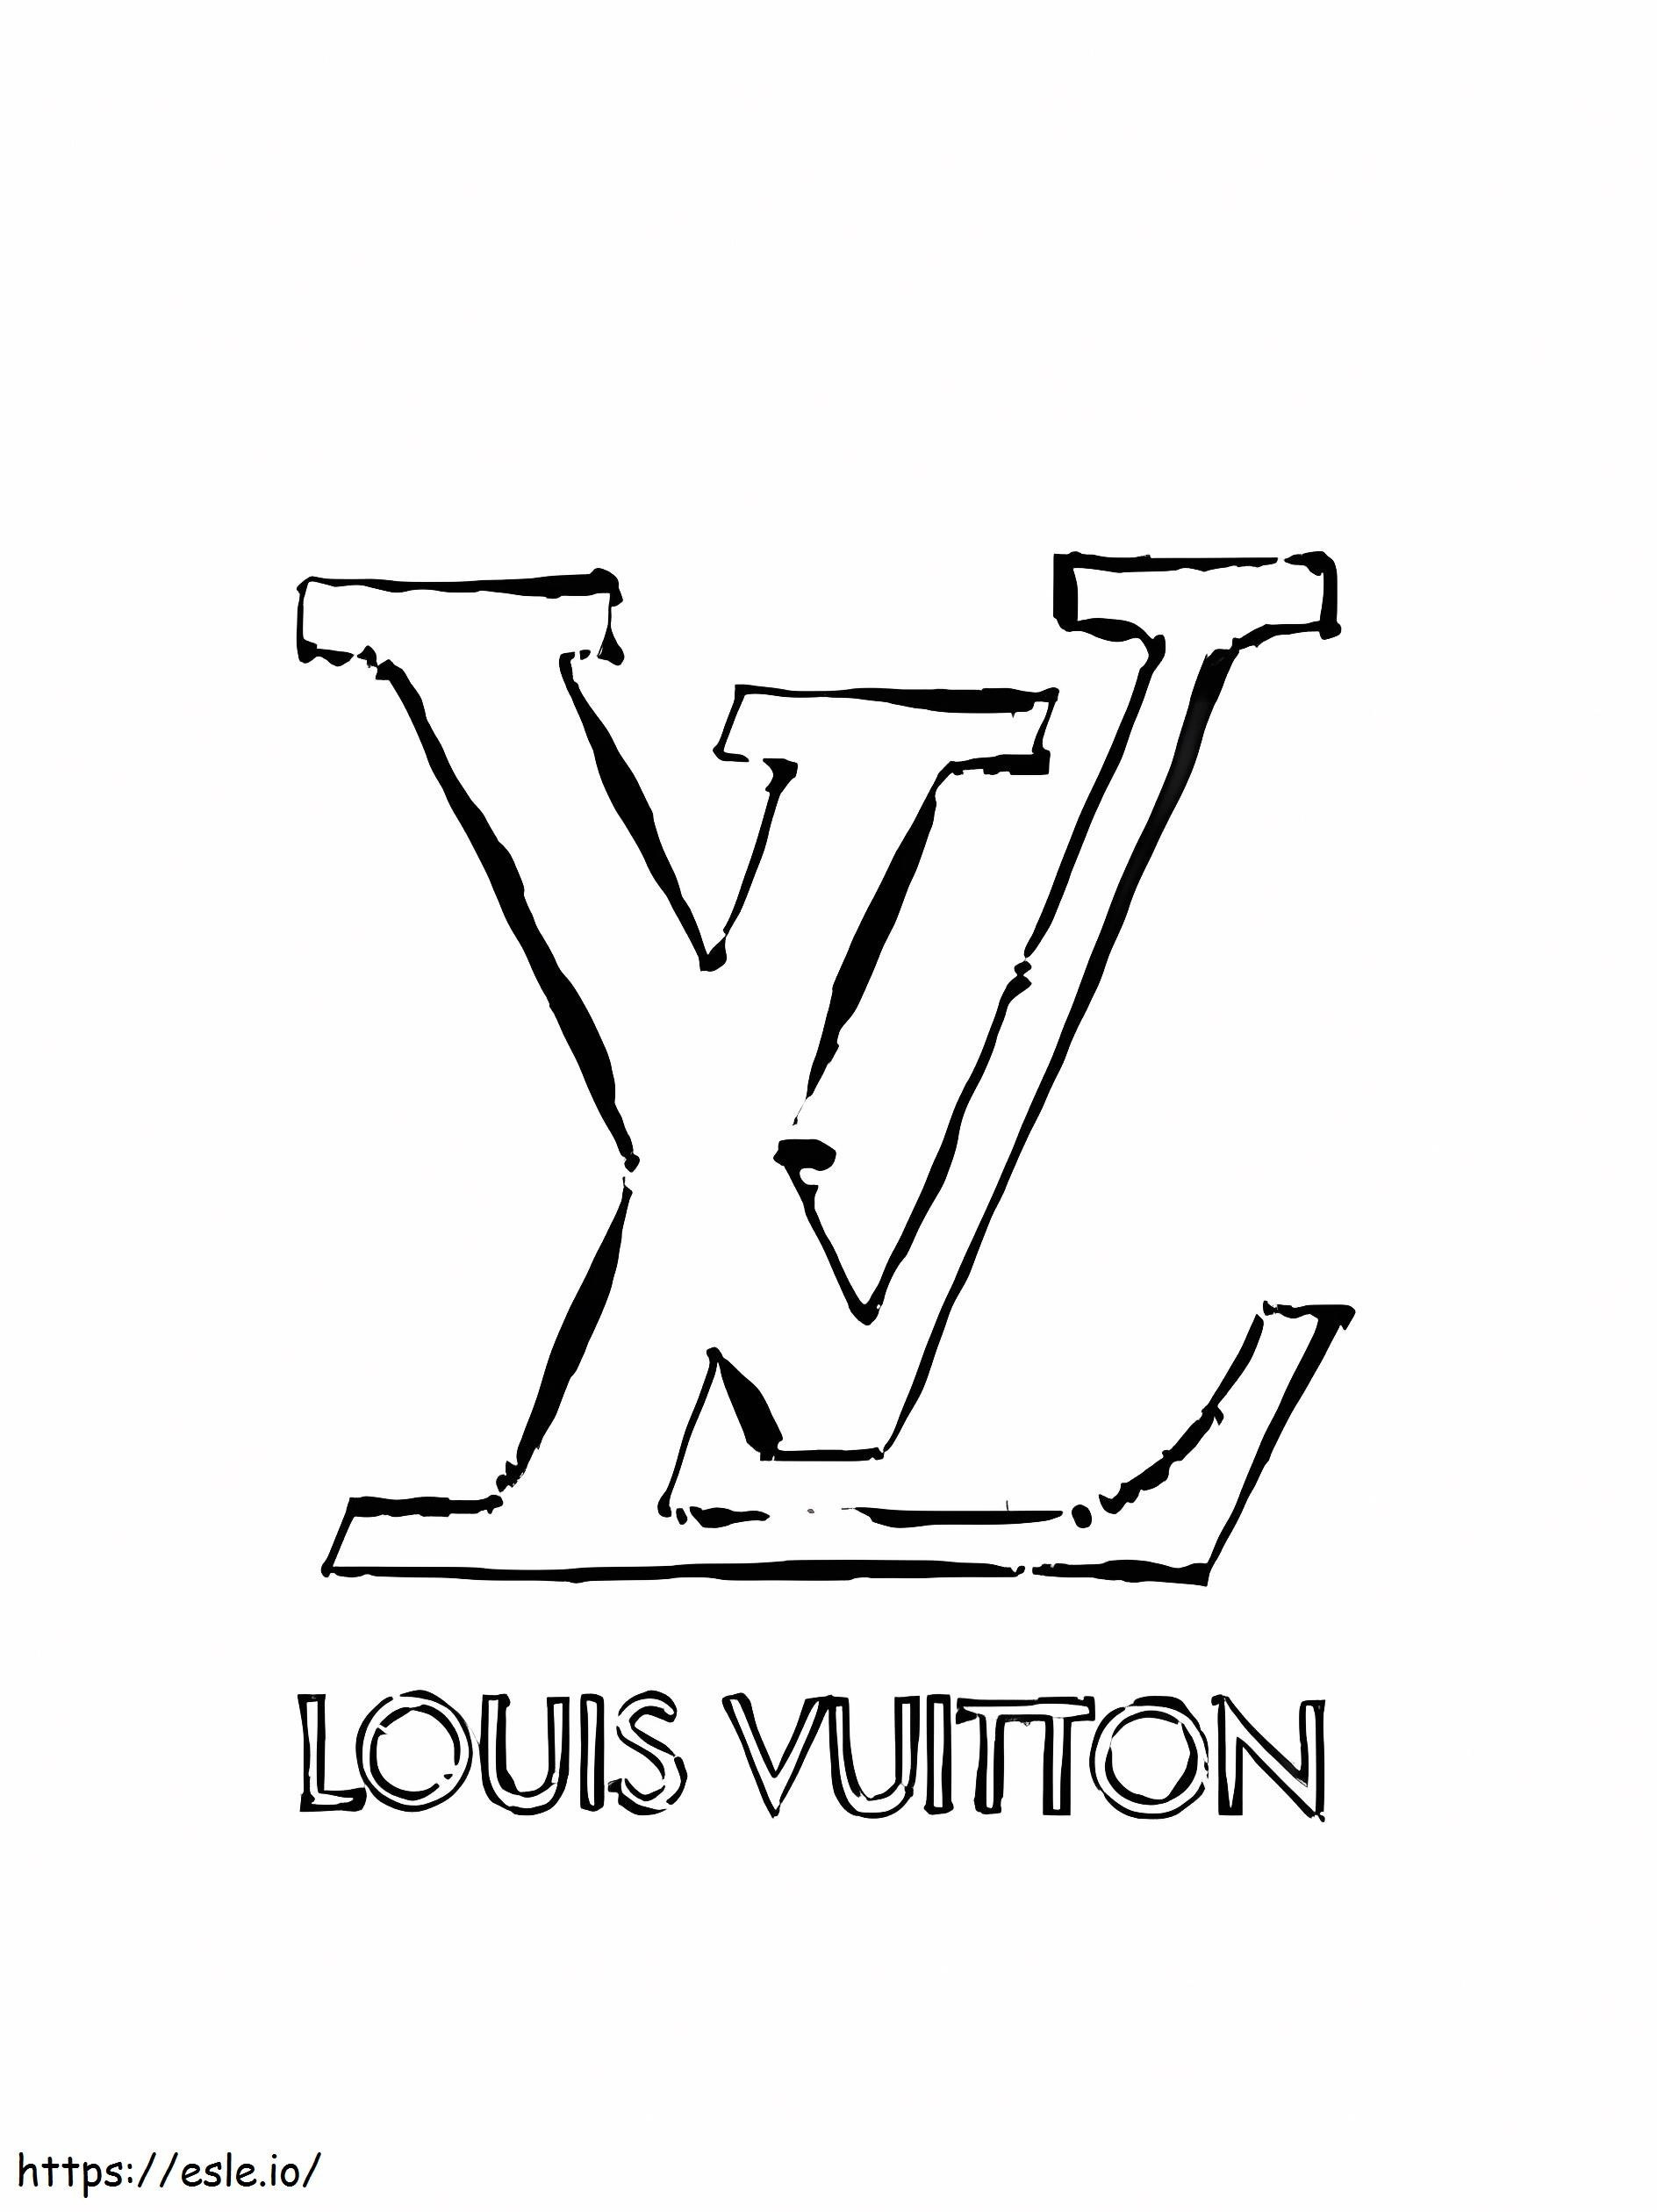 Louis Vuitton-logo kleurplaat kleurplaat